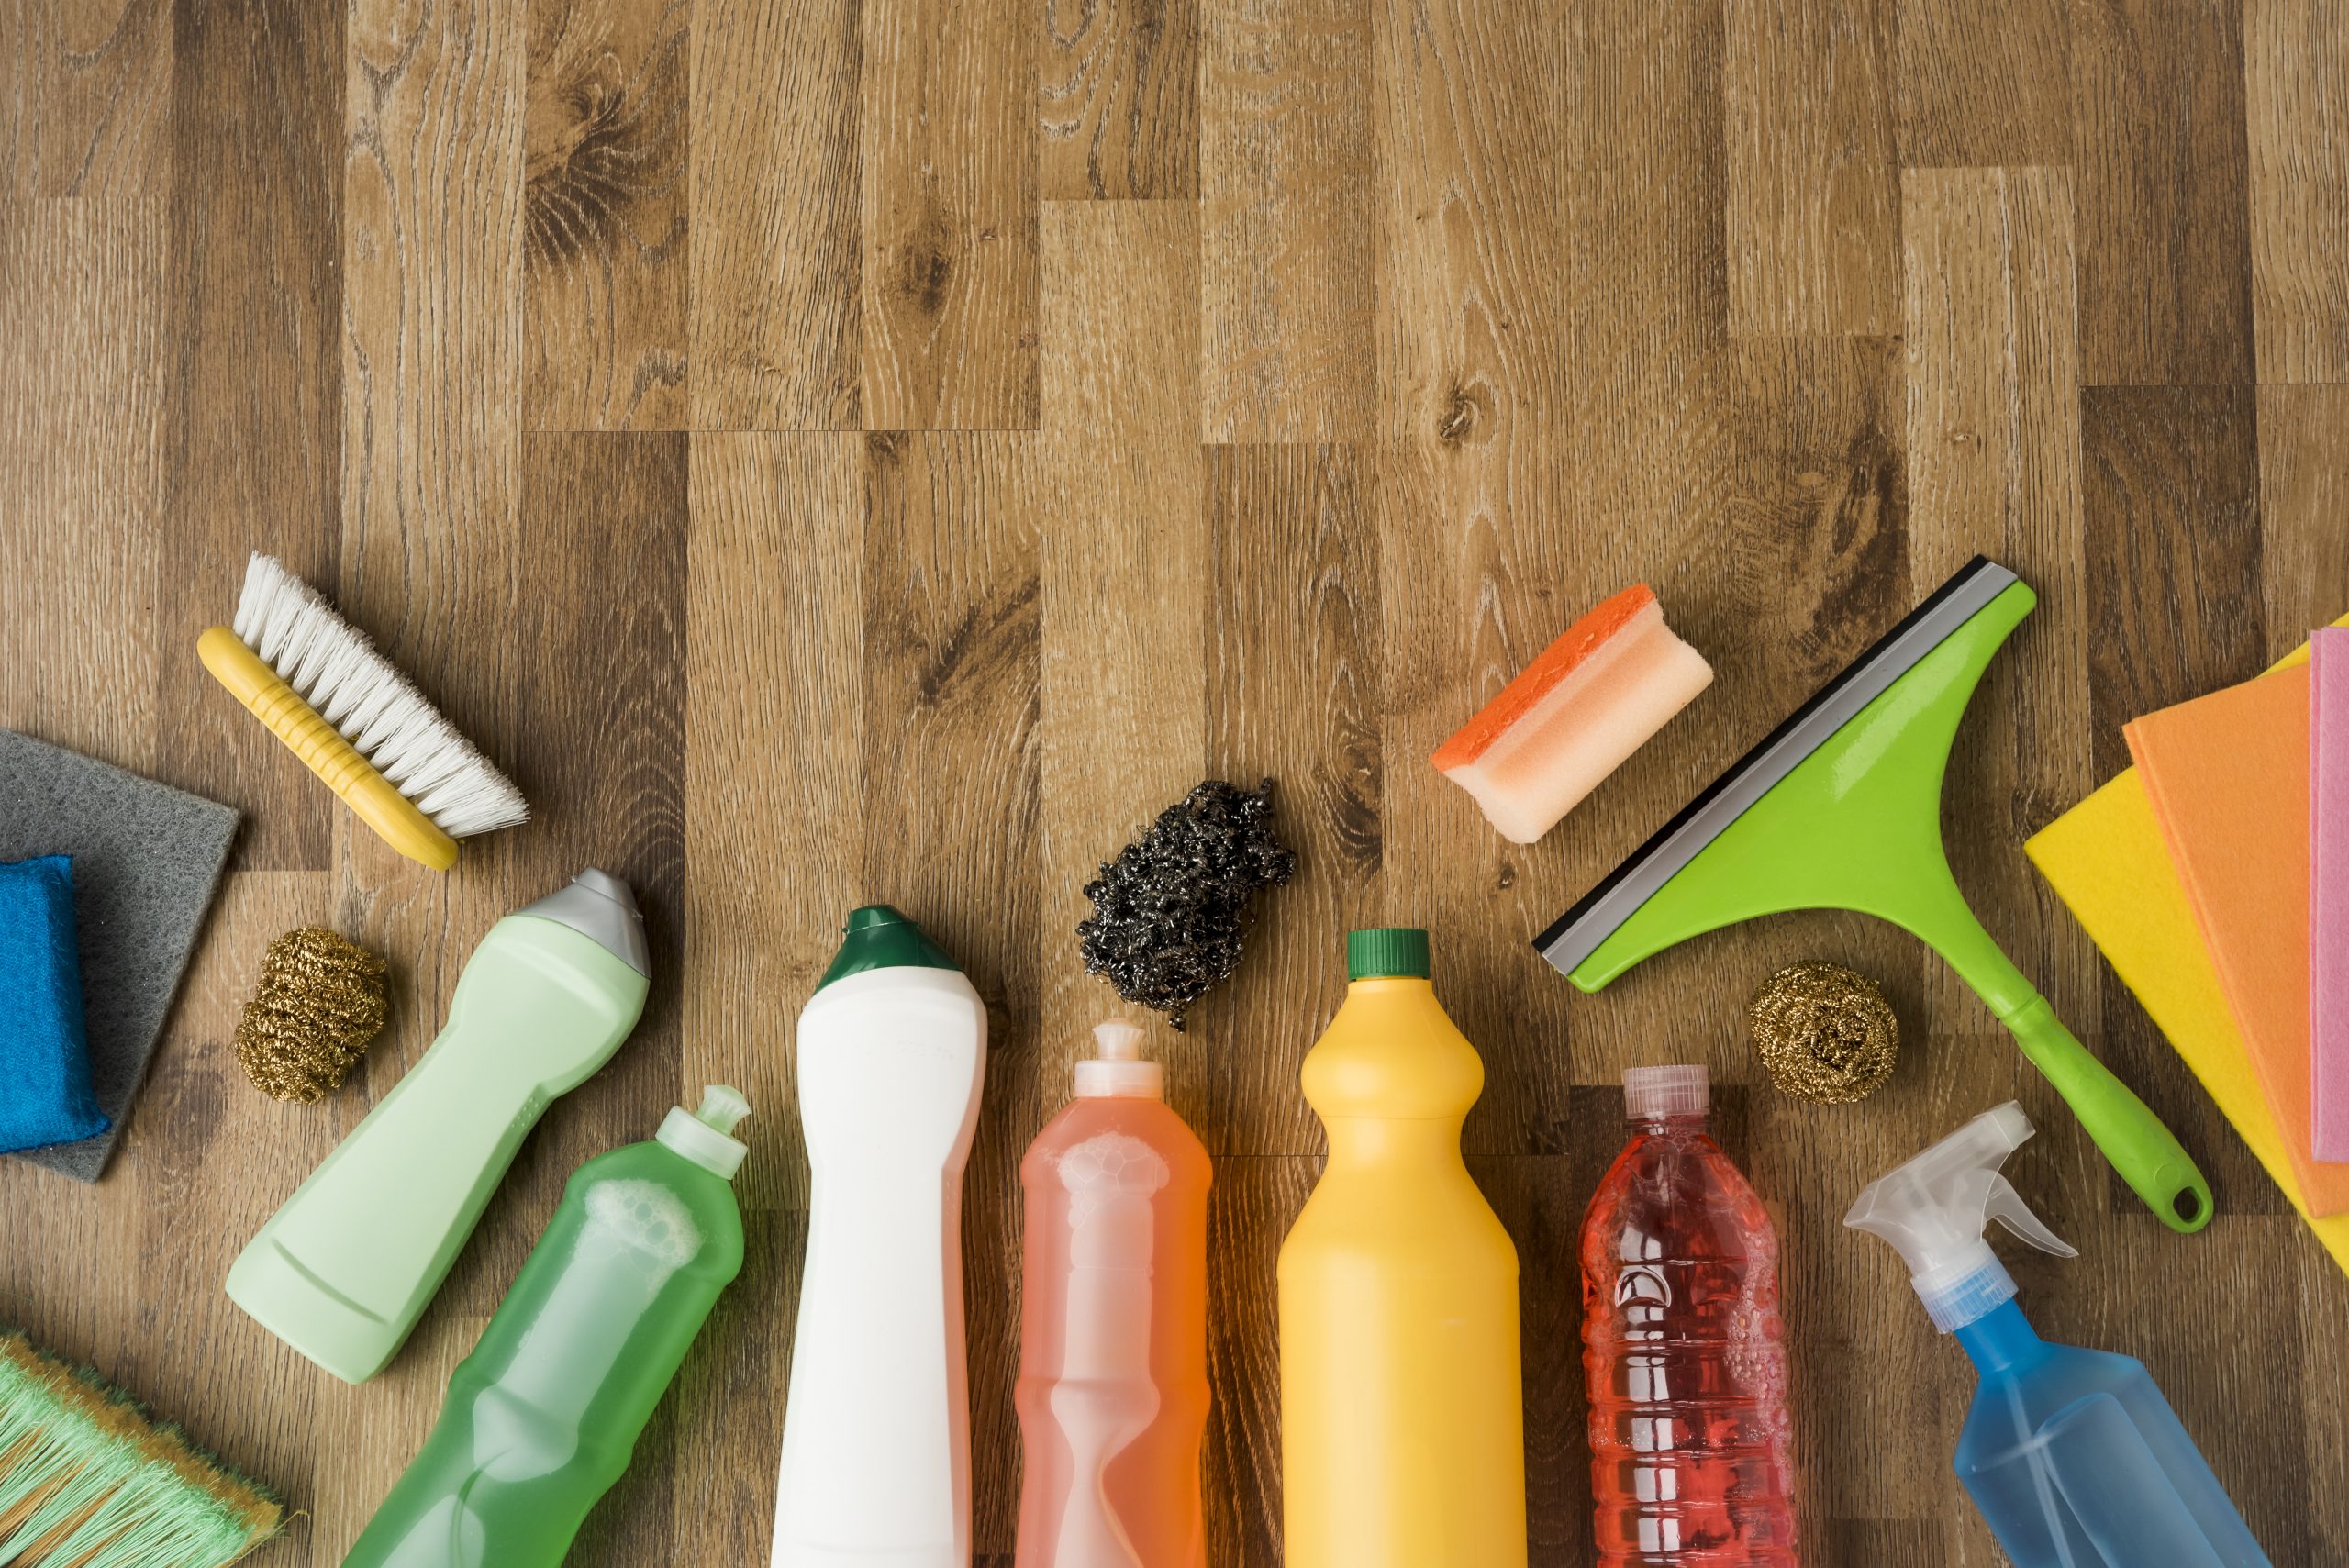 Jornal da Franca – Voir 6 combinaisons de produits de nettoyage pouvant entraîner des risques pour la santé